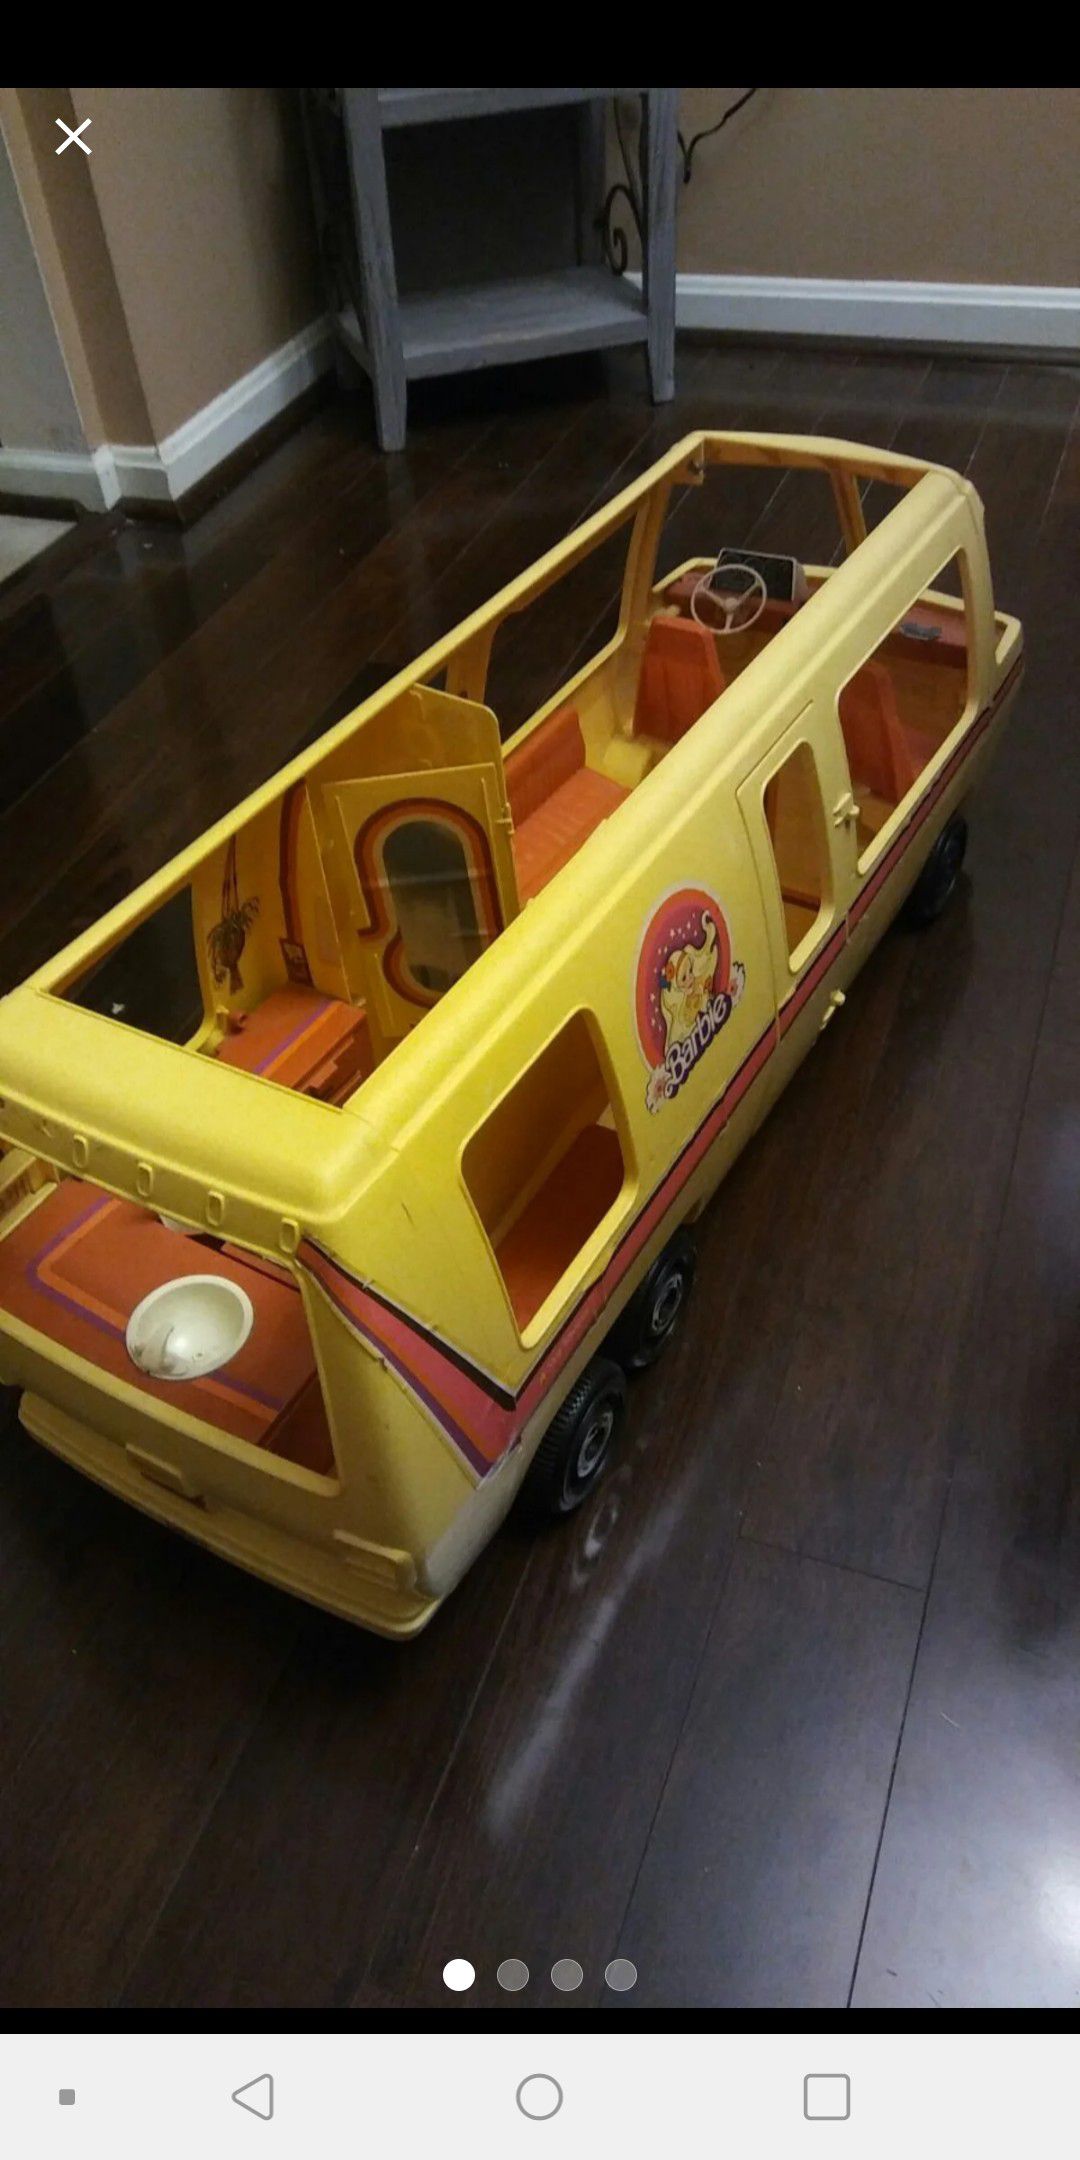 Vintage Barbie yellow Camper bus